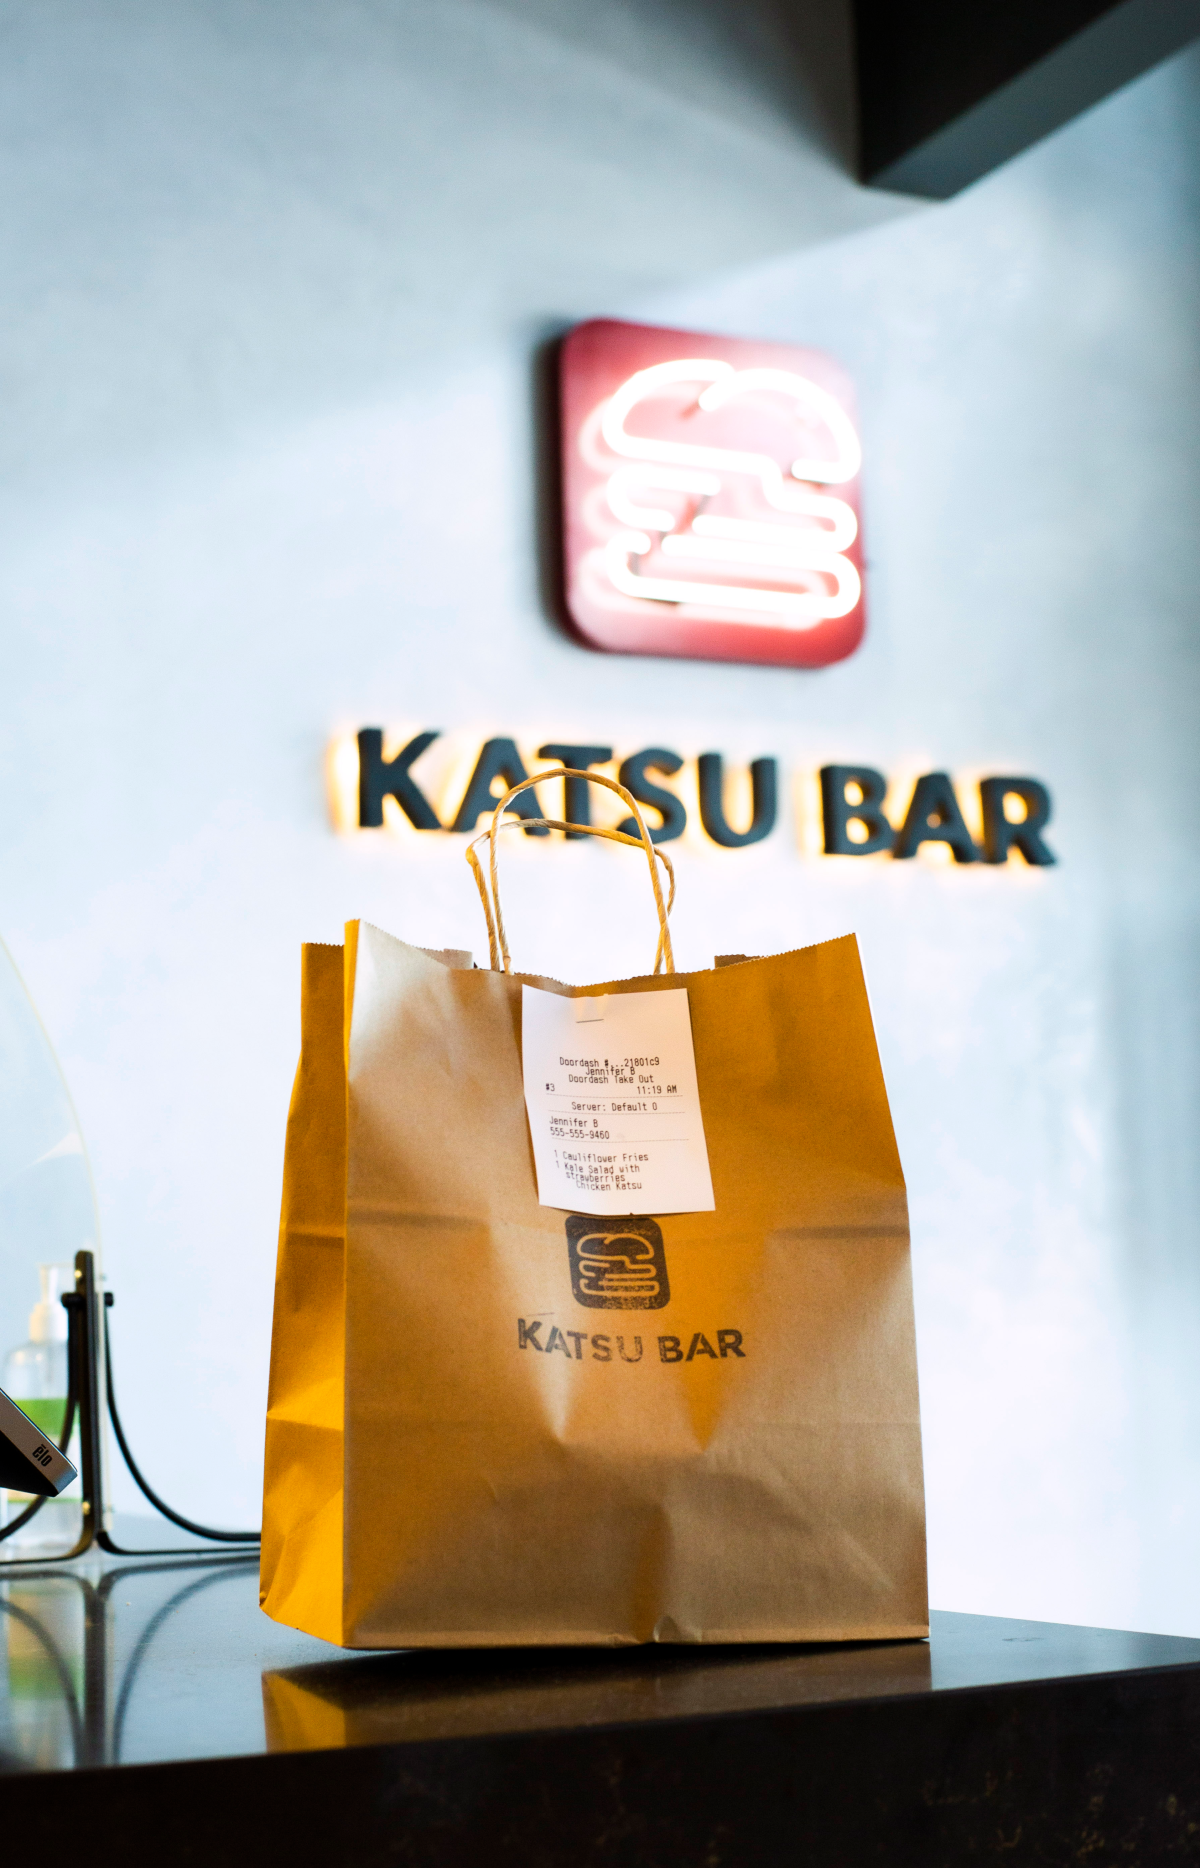 Katsu Bar Sign with To Go Bag